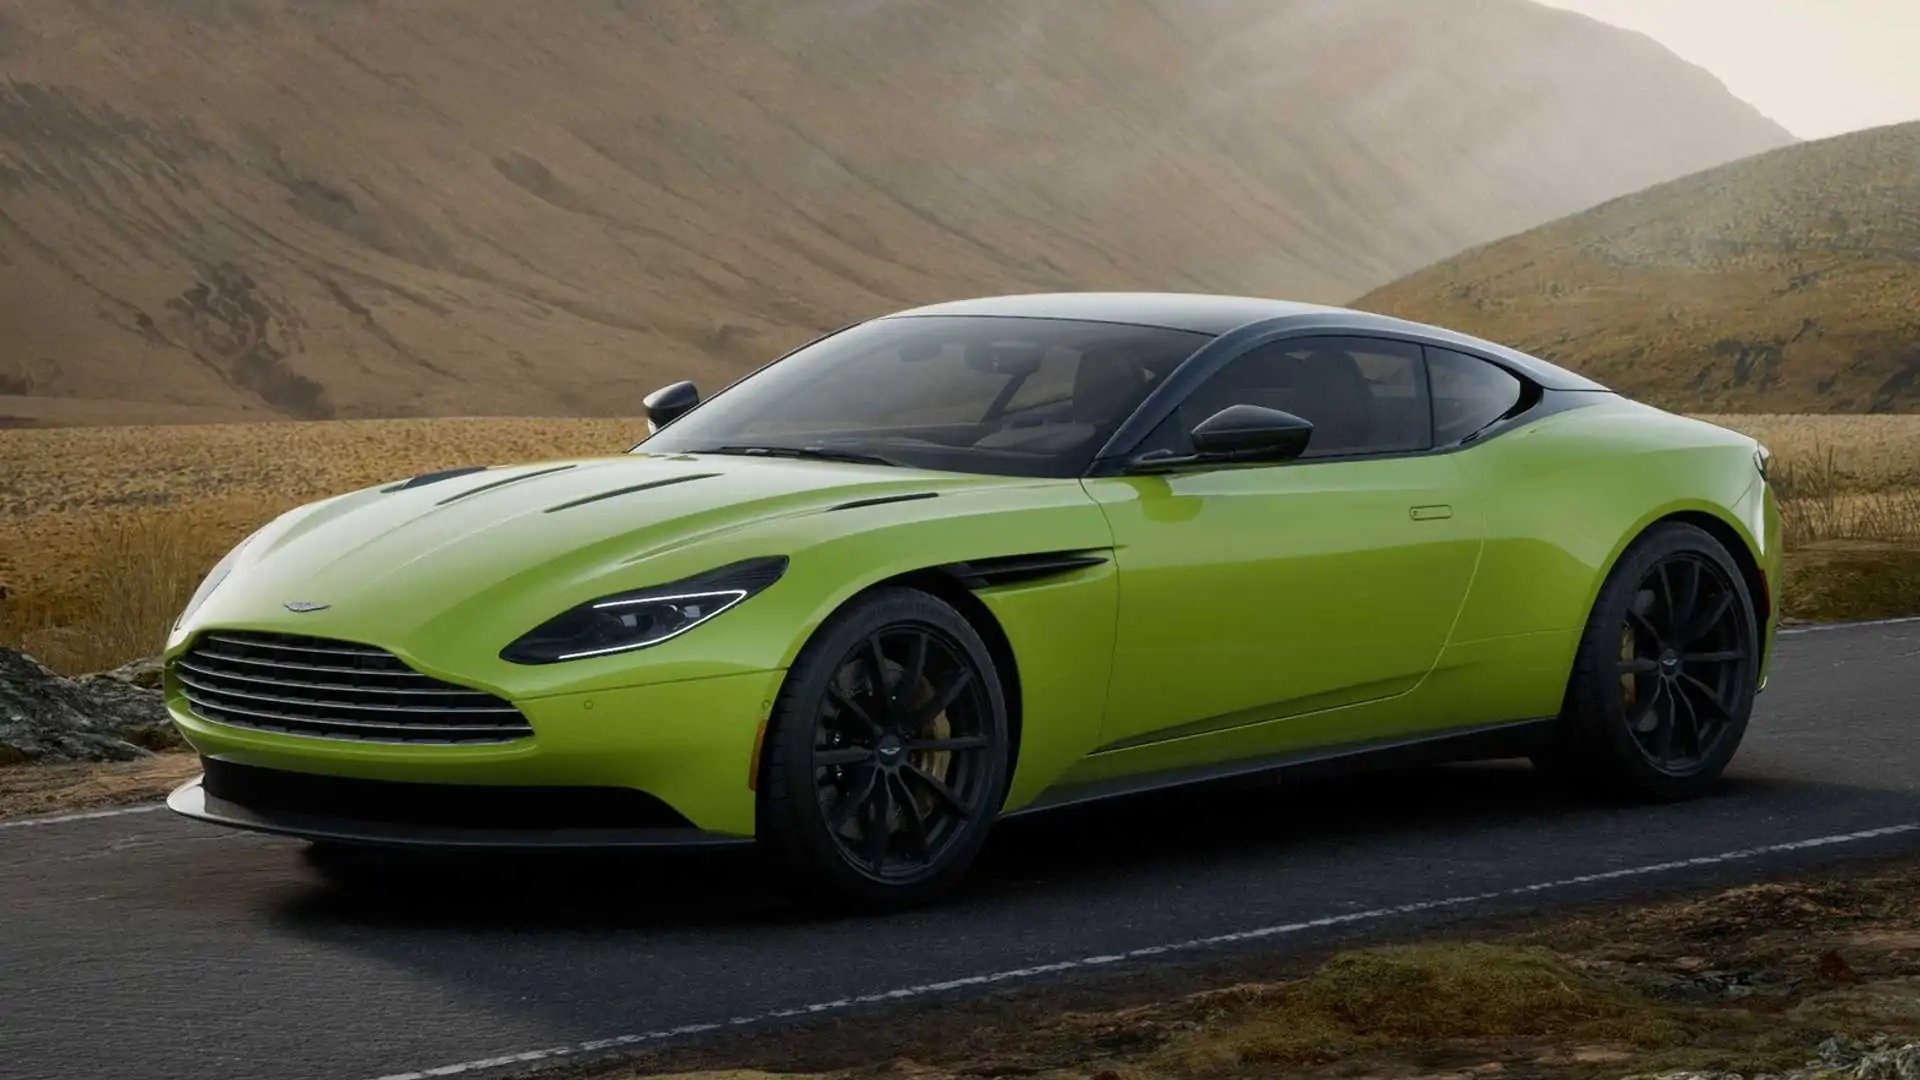 2022 Aston Martın DB11 V8 Coupe